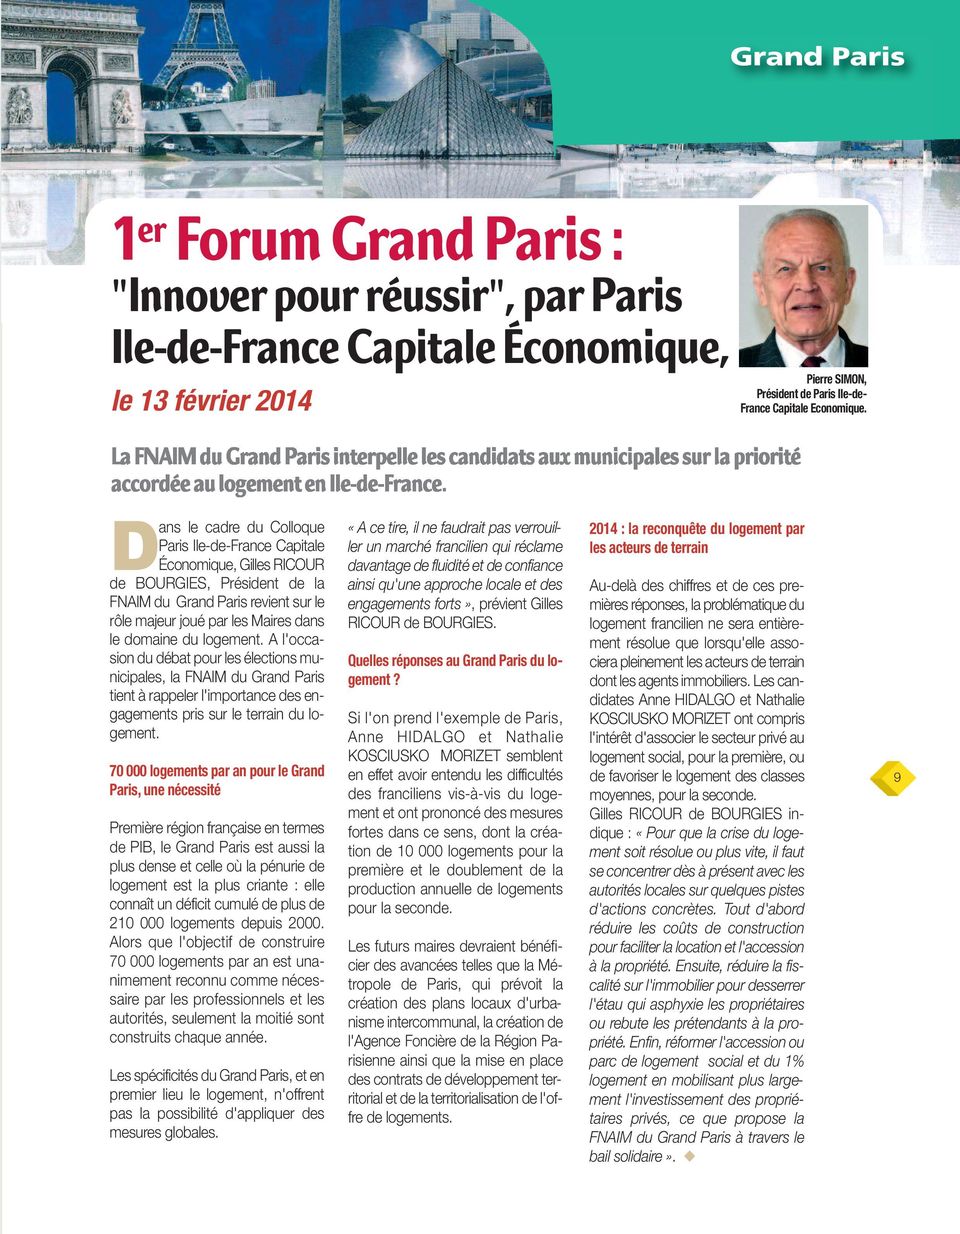 logement. A l'occasion du débat pour les élections municipales, la FNAIM du Grand Paris tient à rappeler l'importance des engagements pris sur le terrain du logement.